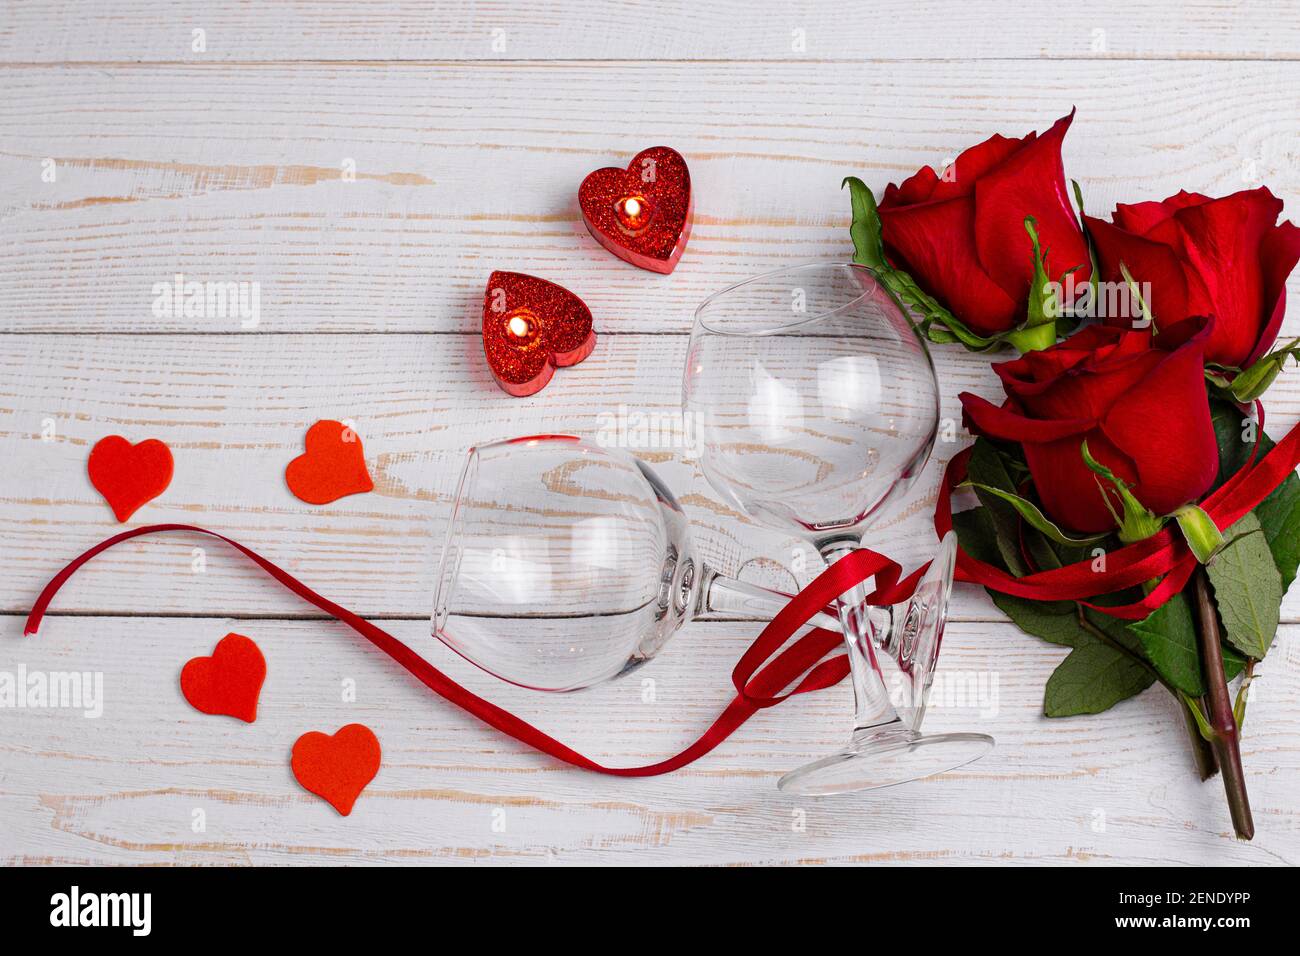 Verres à vin, bougies, roses rouges avec ruban rouge et petit coeur sur fond blanc en bois. Saint-Valentin dîner romantique plat Lay Top View concept Banque D'Images